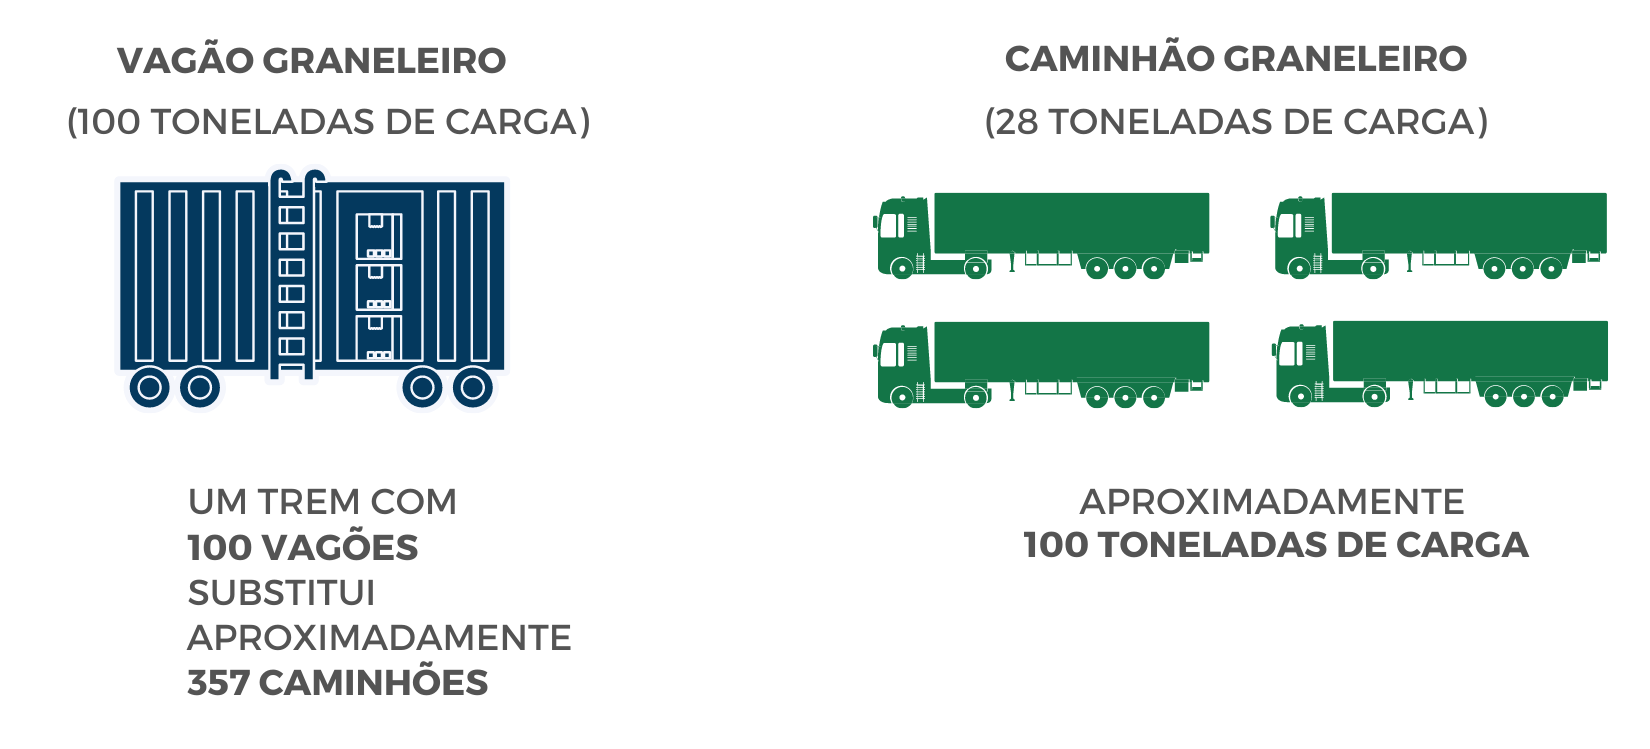 Comparação entre vagão e caminhão